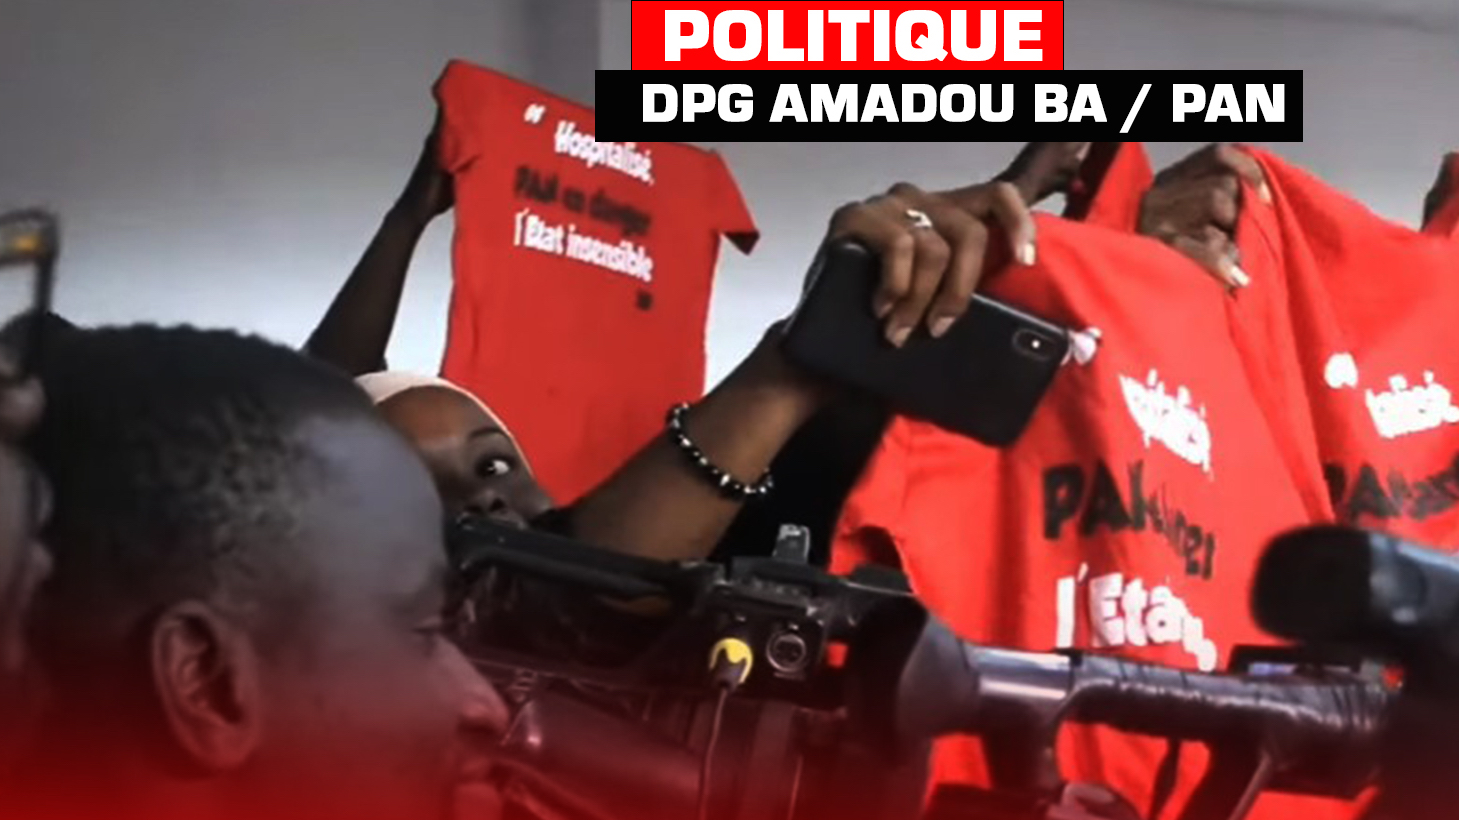 Déclaration de politique générale du PM Amadou Bâ : les journalistes gâchent la fête avec l'affaire Pape Alé Niang